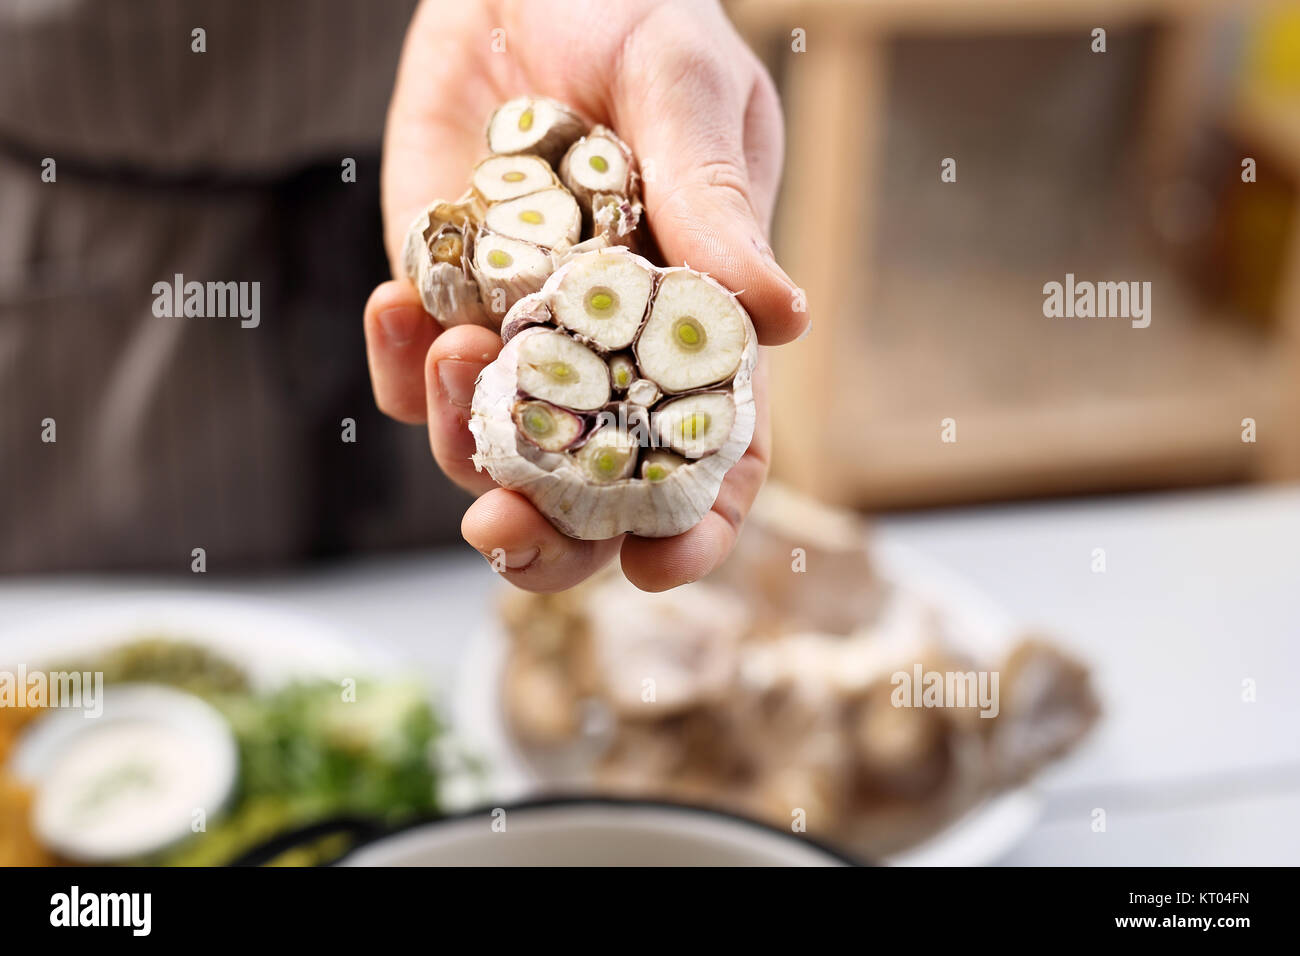 Aglio in cucina vegetariana. una sana cucina,cuocere l'aglio in cucina contiene una testa di aglio fresco. Foto Stock